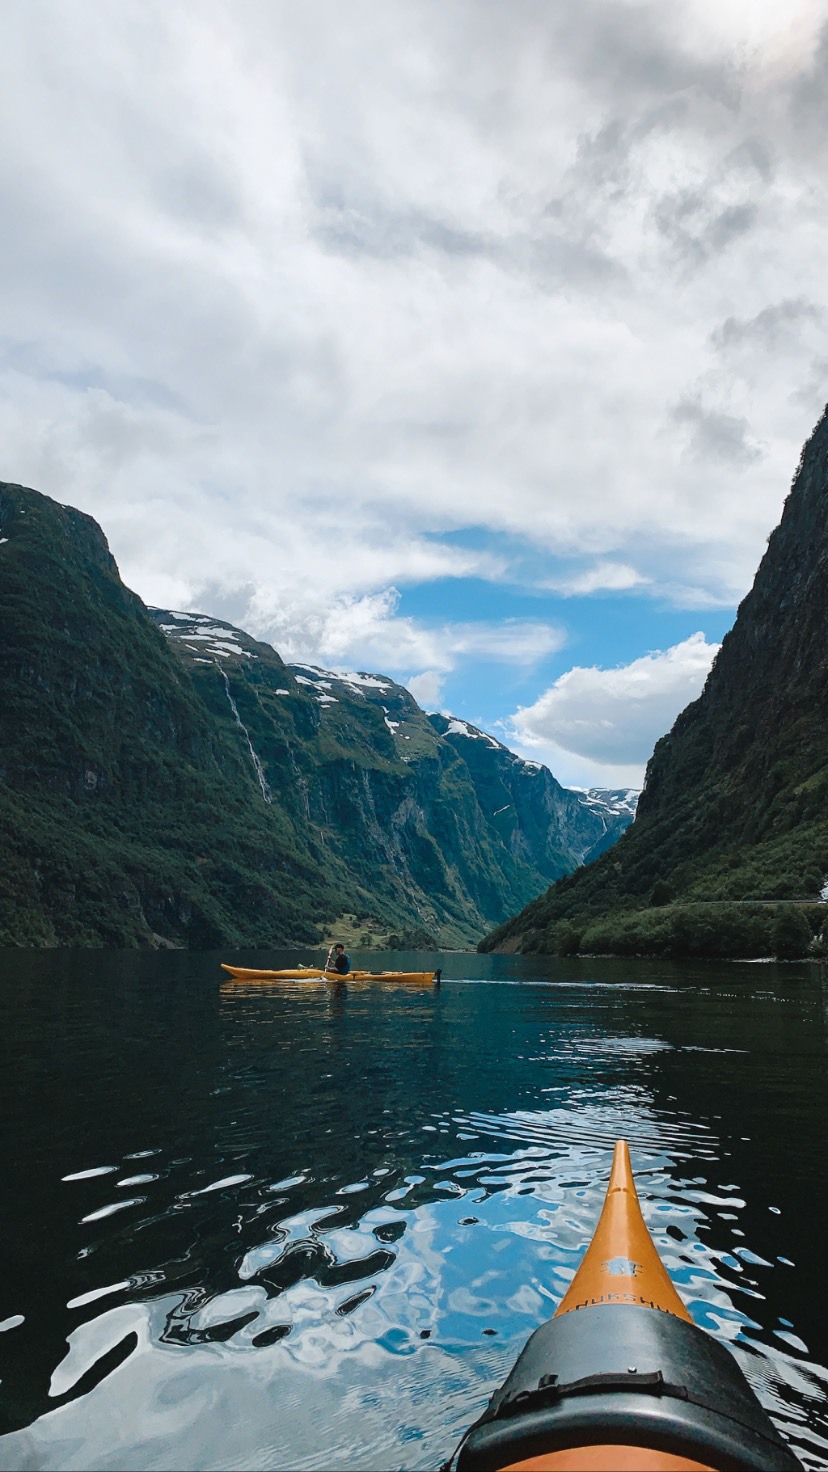 Guide: Ferie i Norge / 1 uges roadtrip - rute, hikes, oplevelser og gode råd